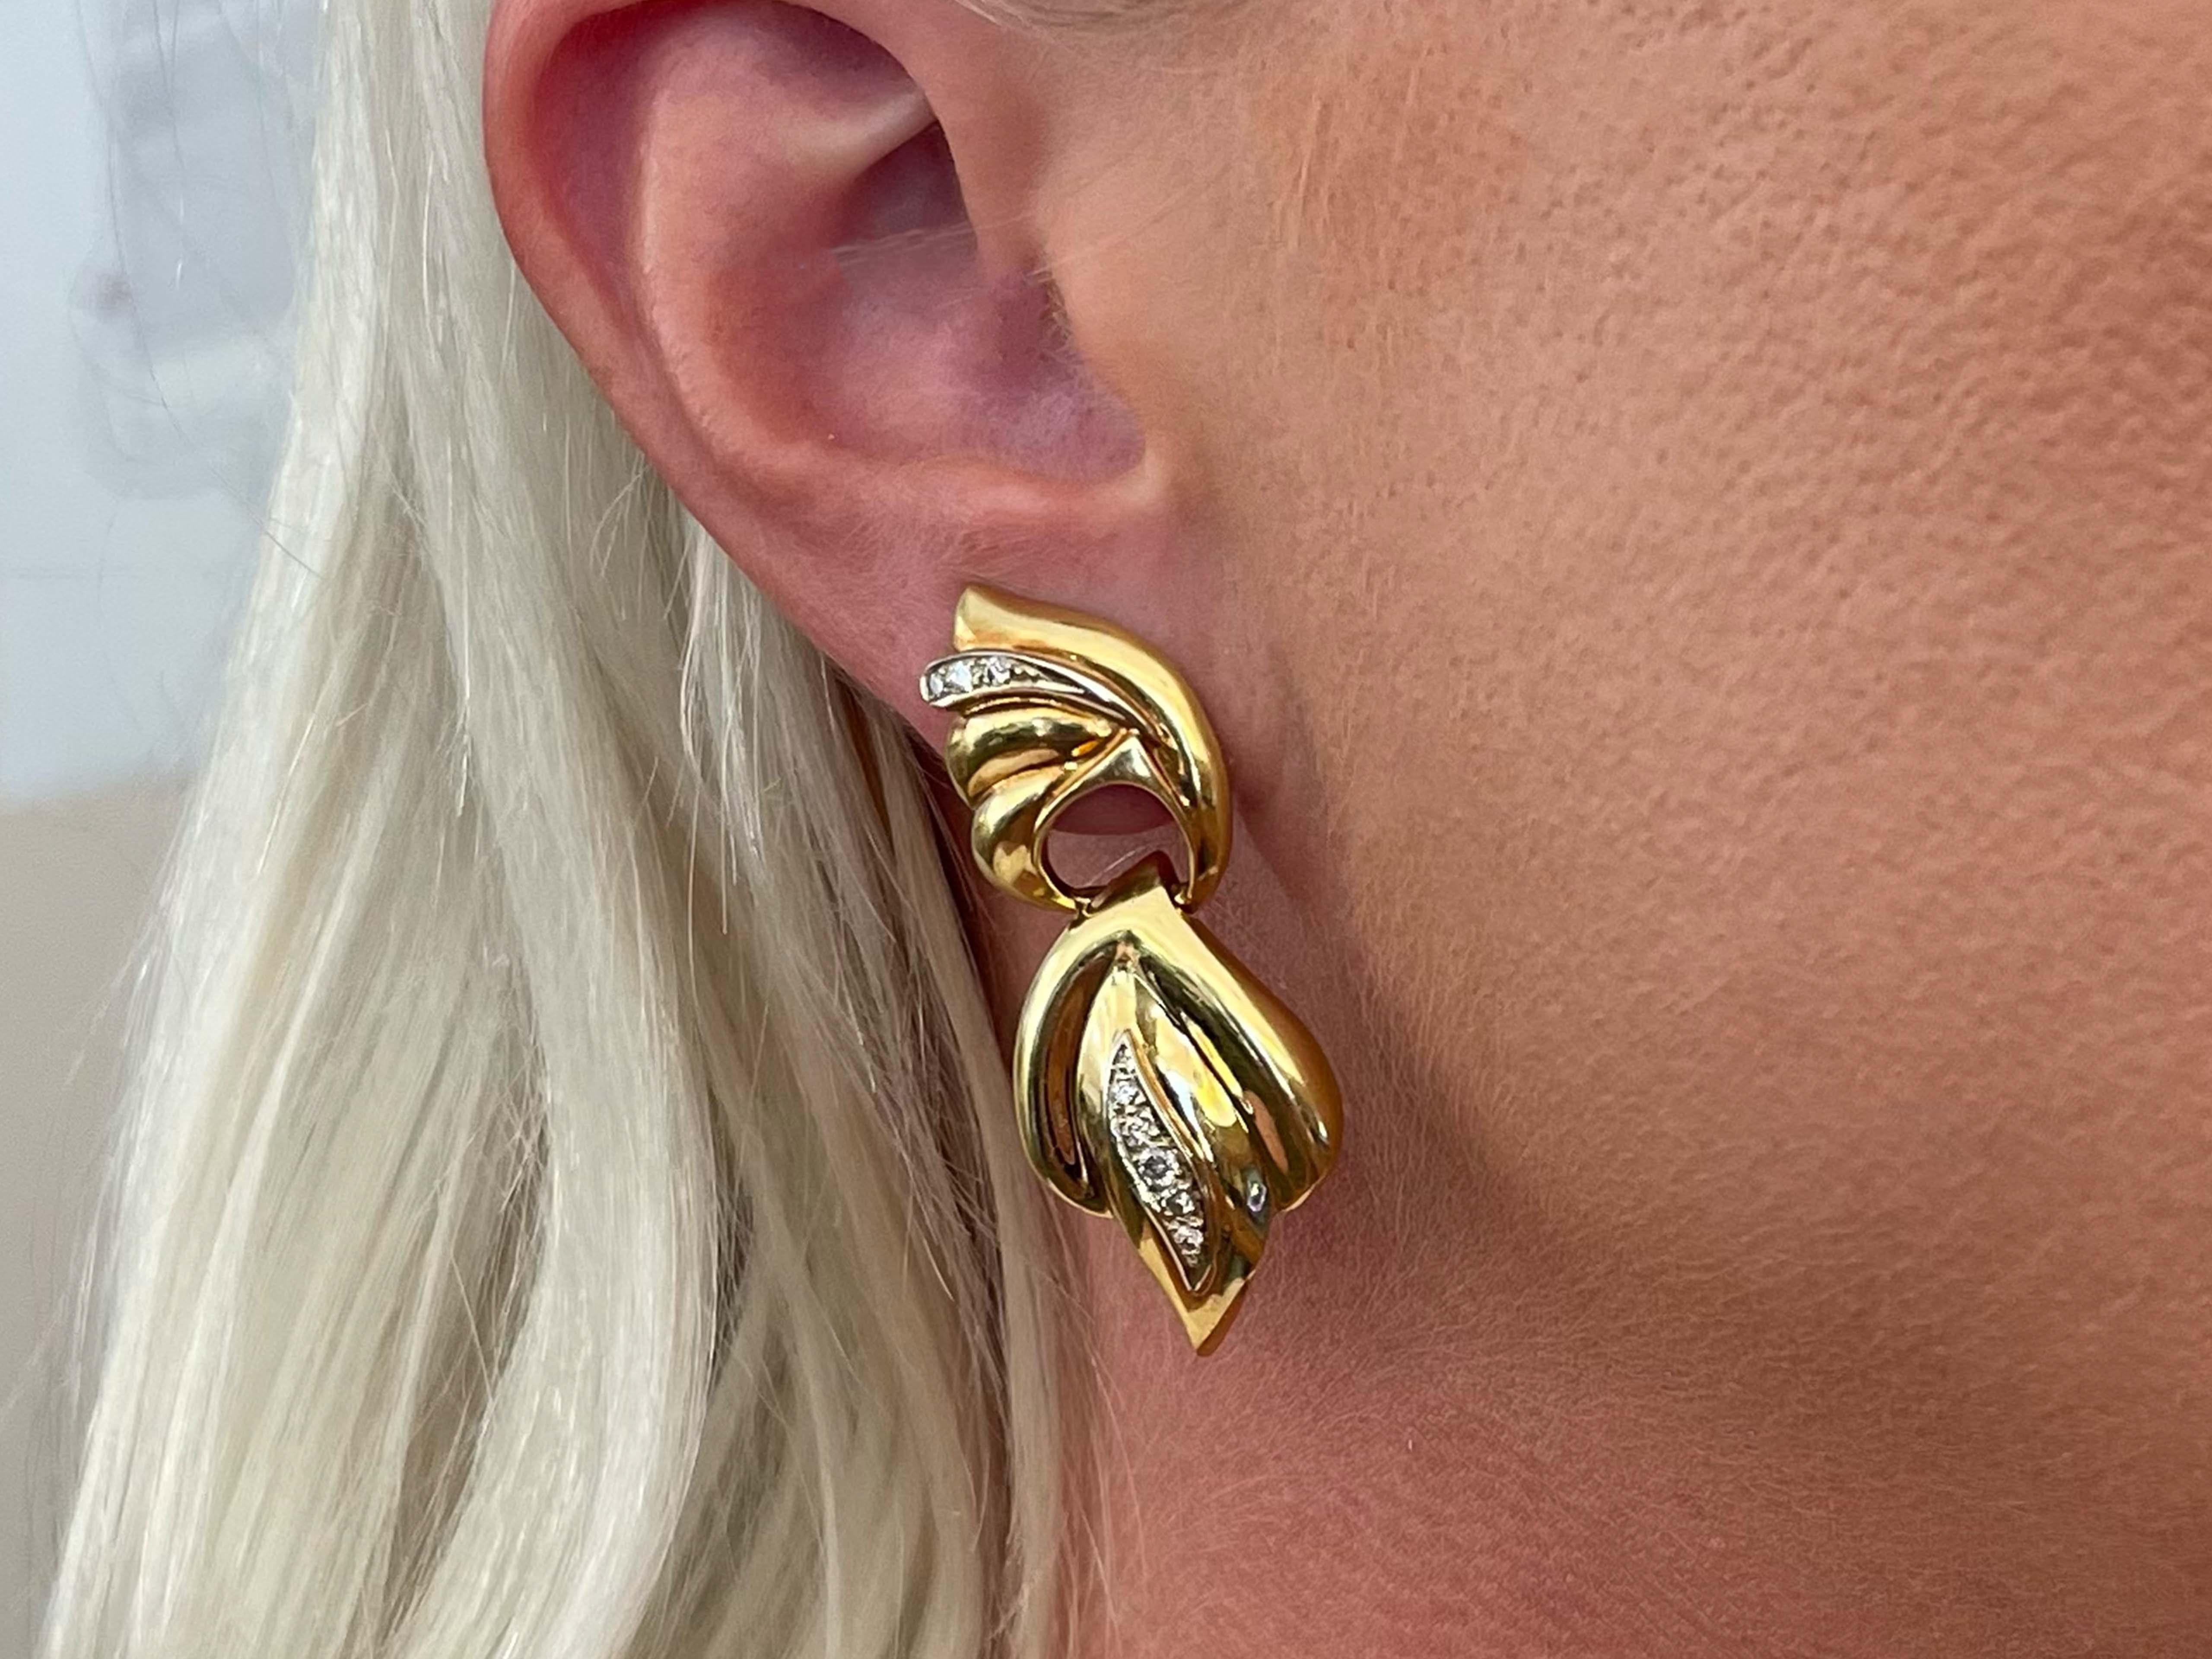 Earrings Specifications:

Metal: 14k Yellow Gold

Earring Length: 1.75